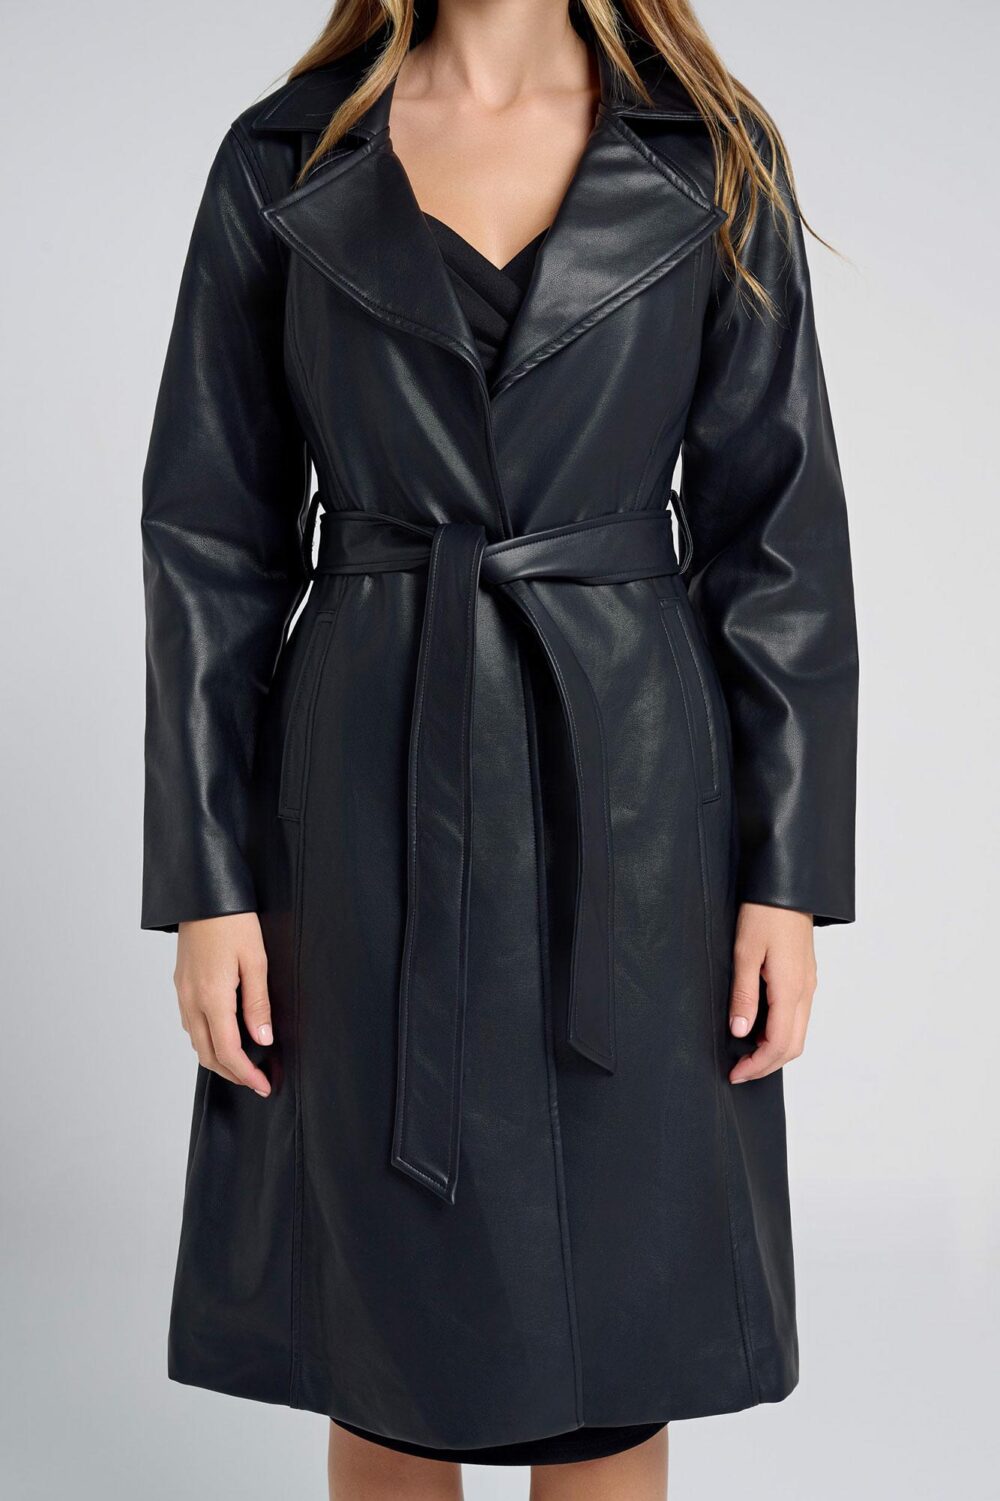 Ladies Coat Colour is Black